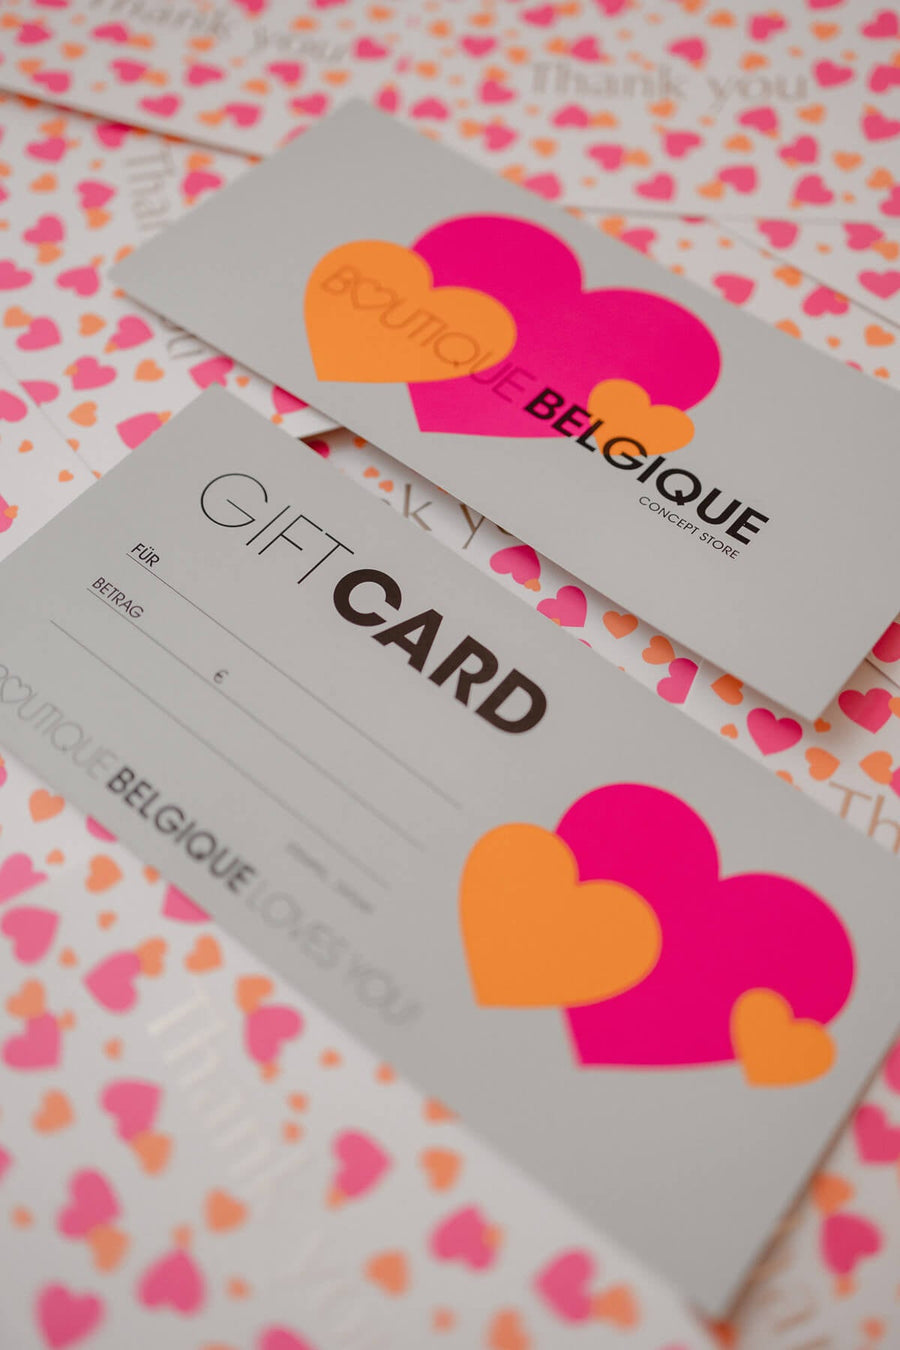 Gift Card - Boutique Belgique Concept Store